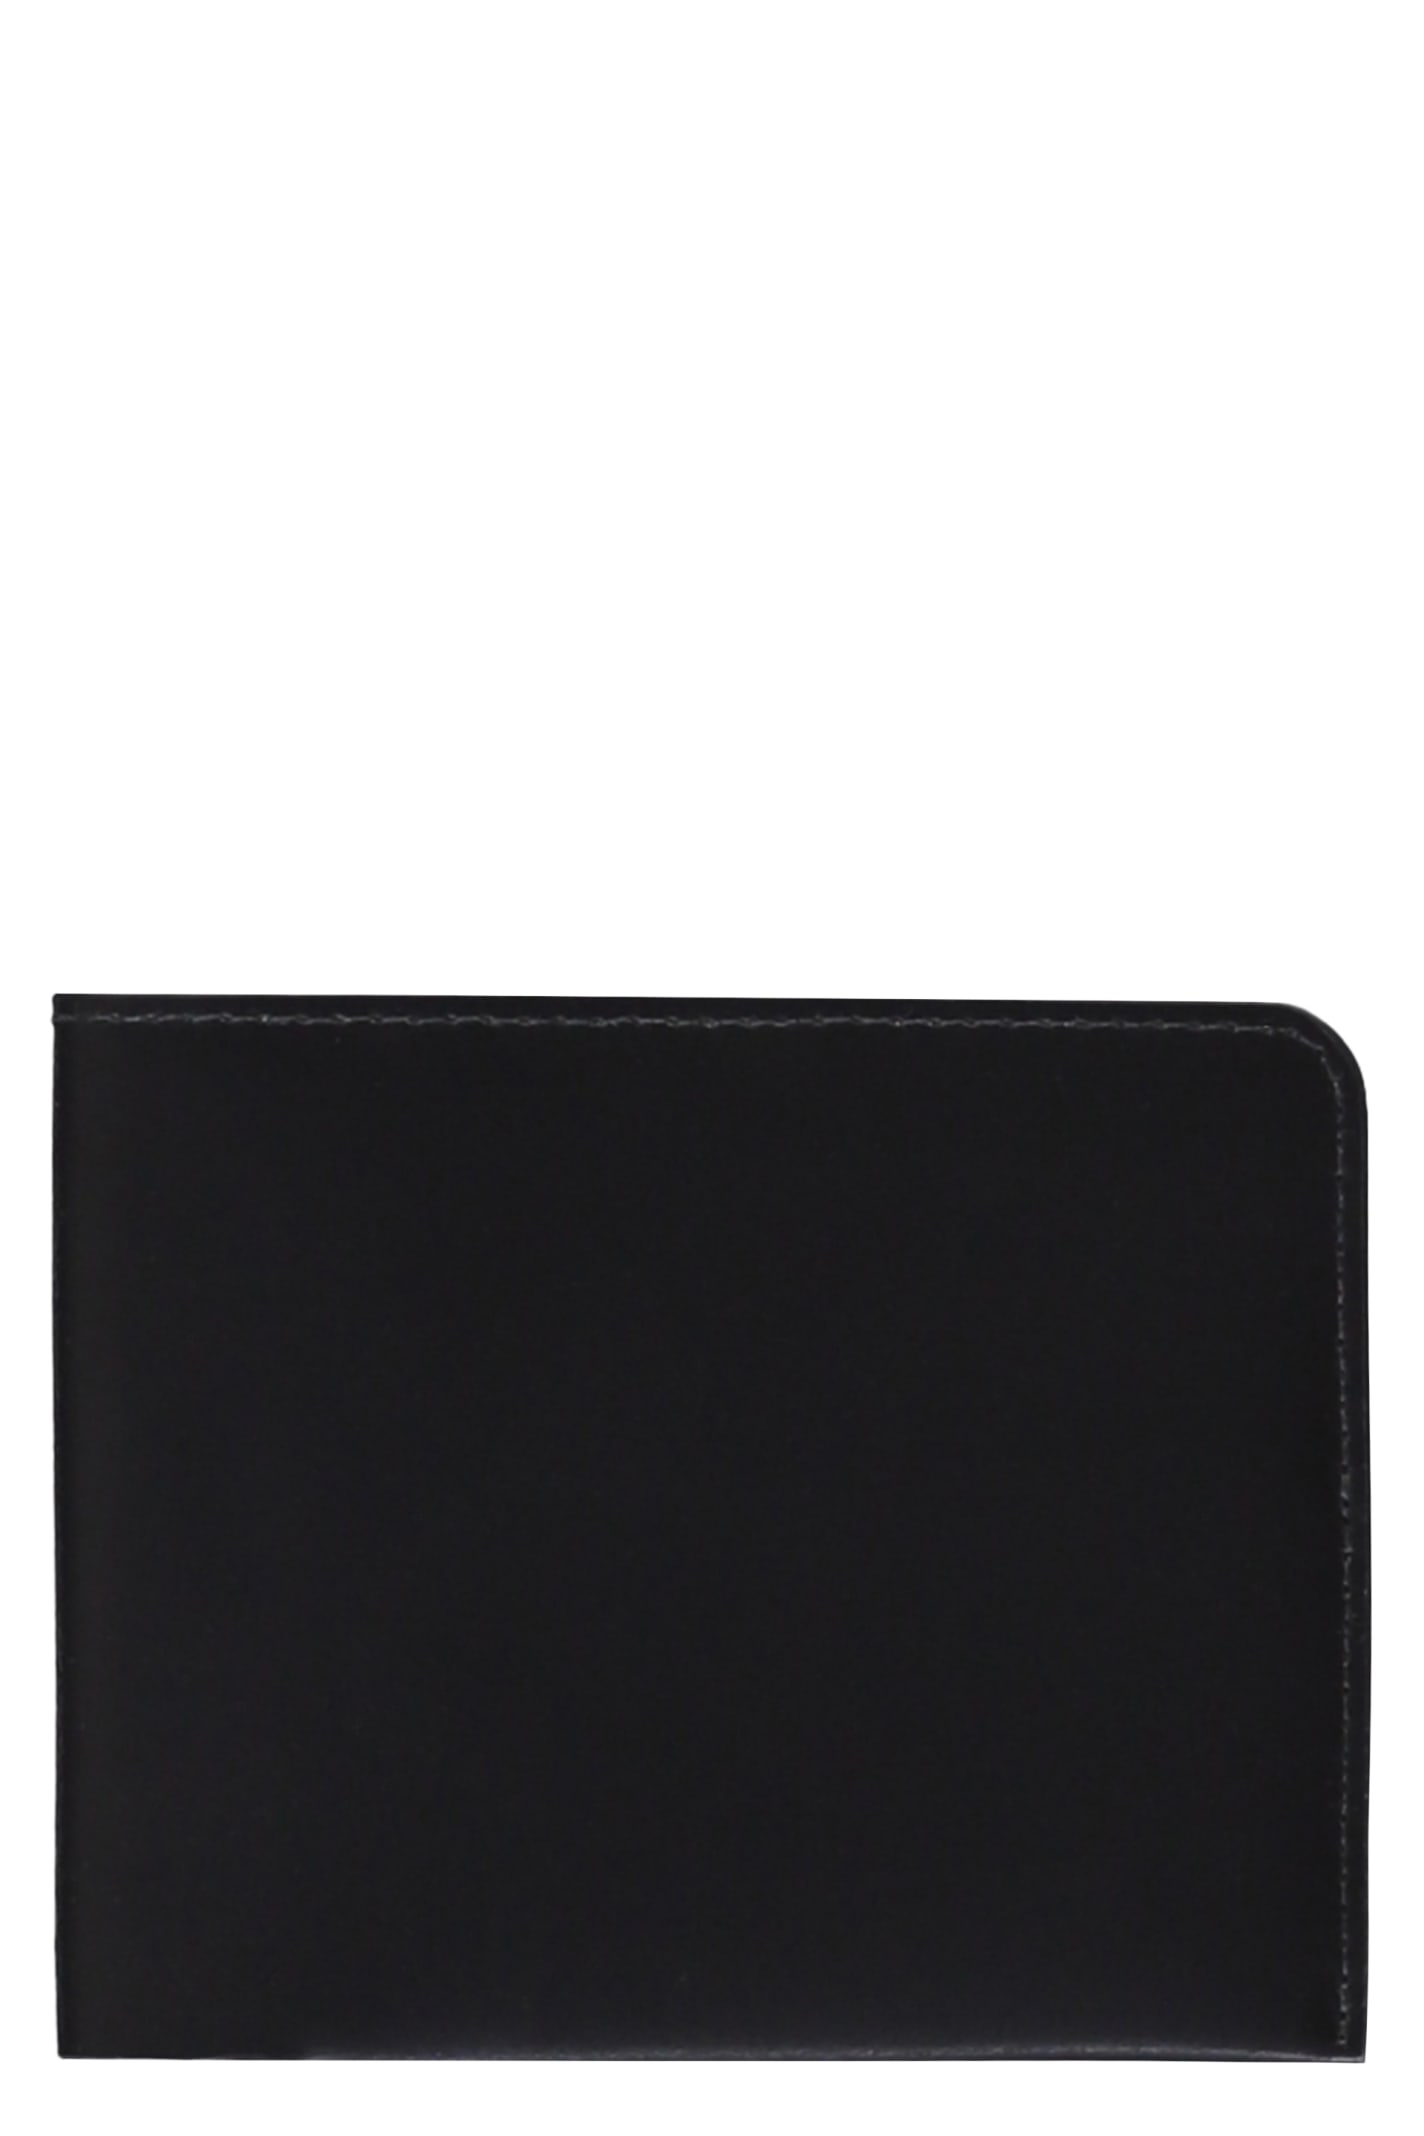 Shop Dries Van Noten Leather Wallet In Black